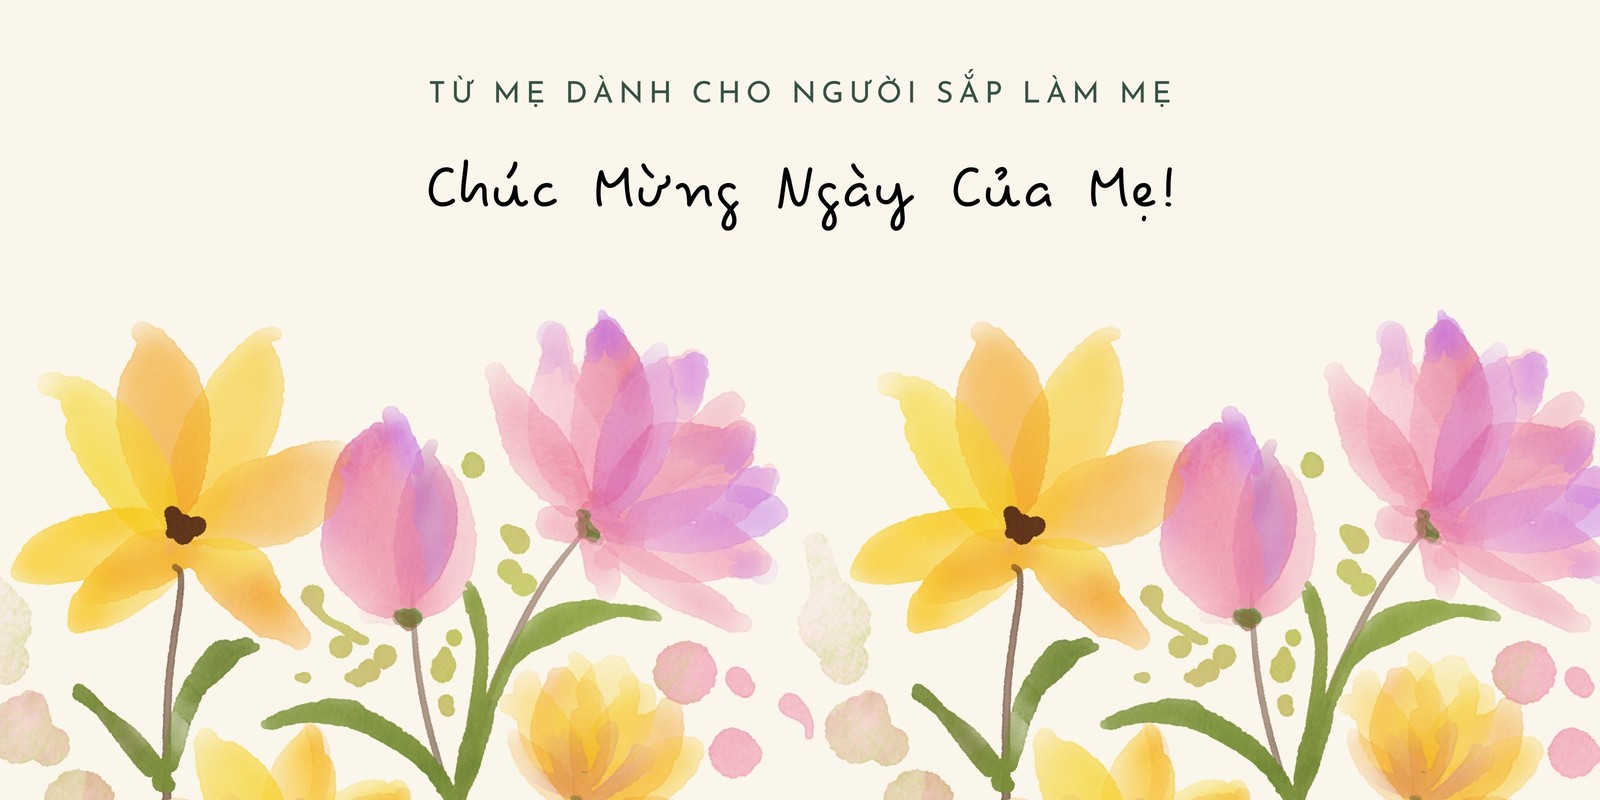 Bảng chữ cái tiếng Việt là một phần quan trọng trong việc giới thiệu sản phẩm của bạn đến khách hàng tiềm năng. Chúng tôi cung cấp bảng chữ cái tiếng Việt chất lượng cao, thiết kế đẹp mắt và dễ dàng sử dụng. Hãy xem ngay bảng chữ cái tiếng Việt của chúng tôi để làm cho thương hiệu của bạn nổi bật.